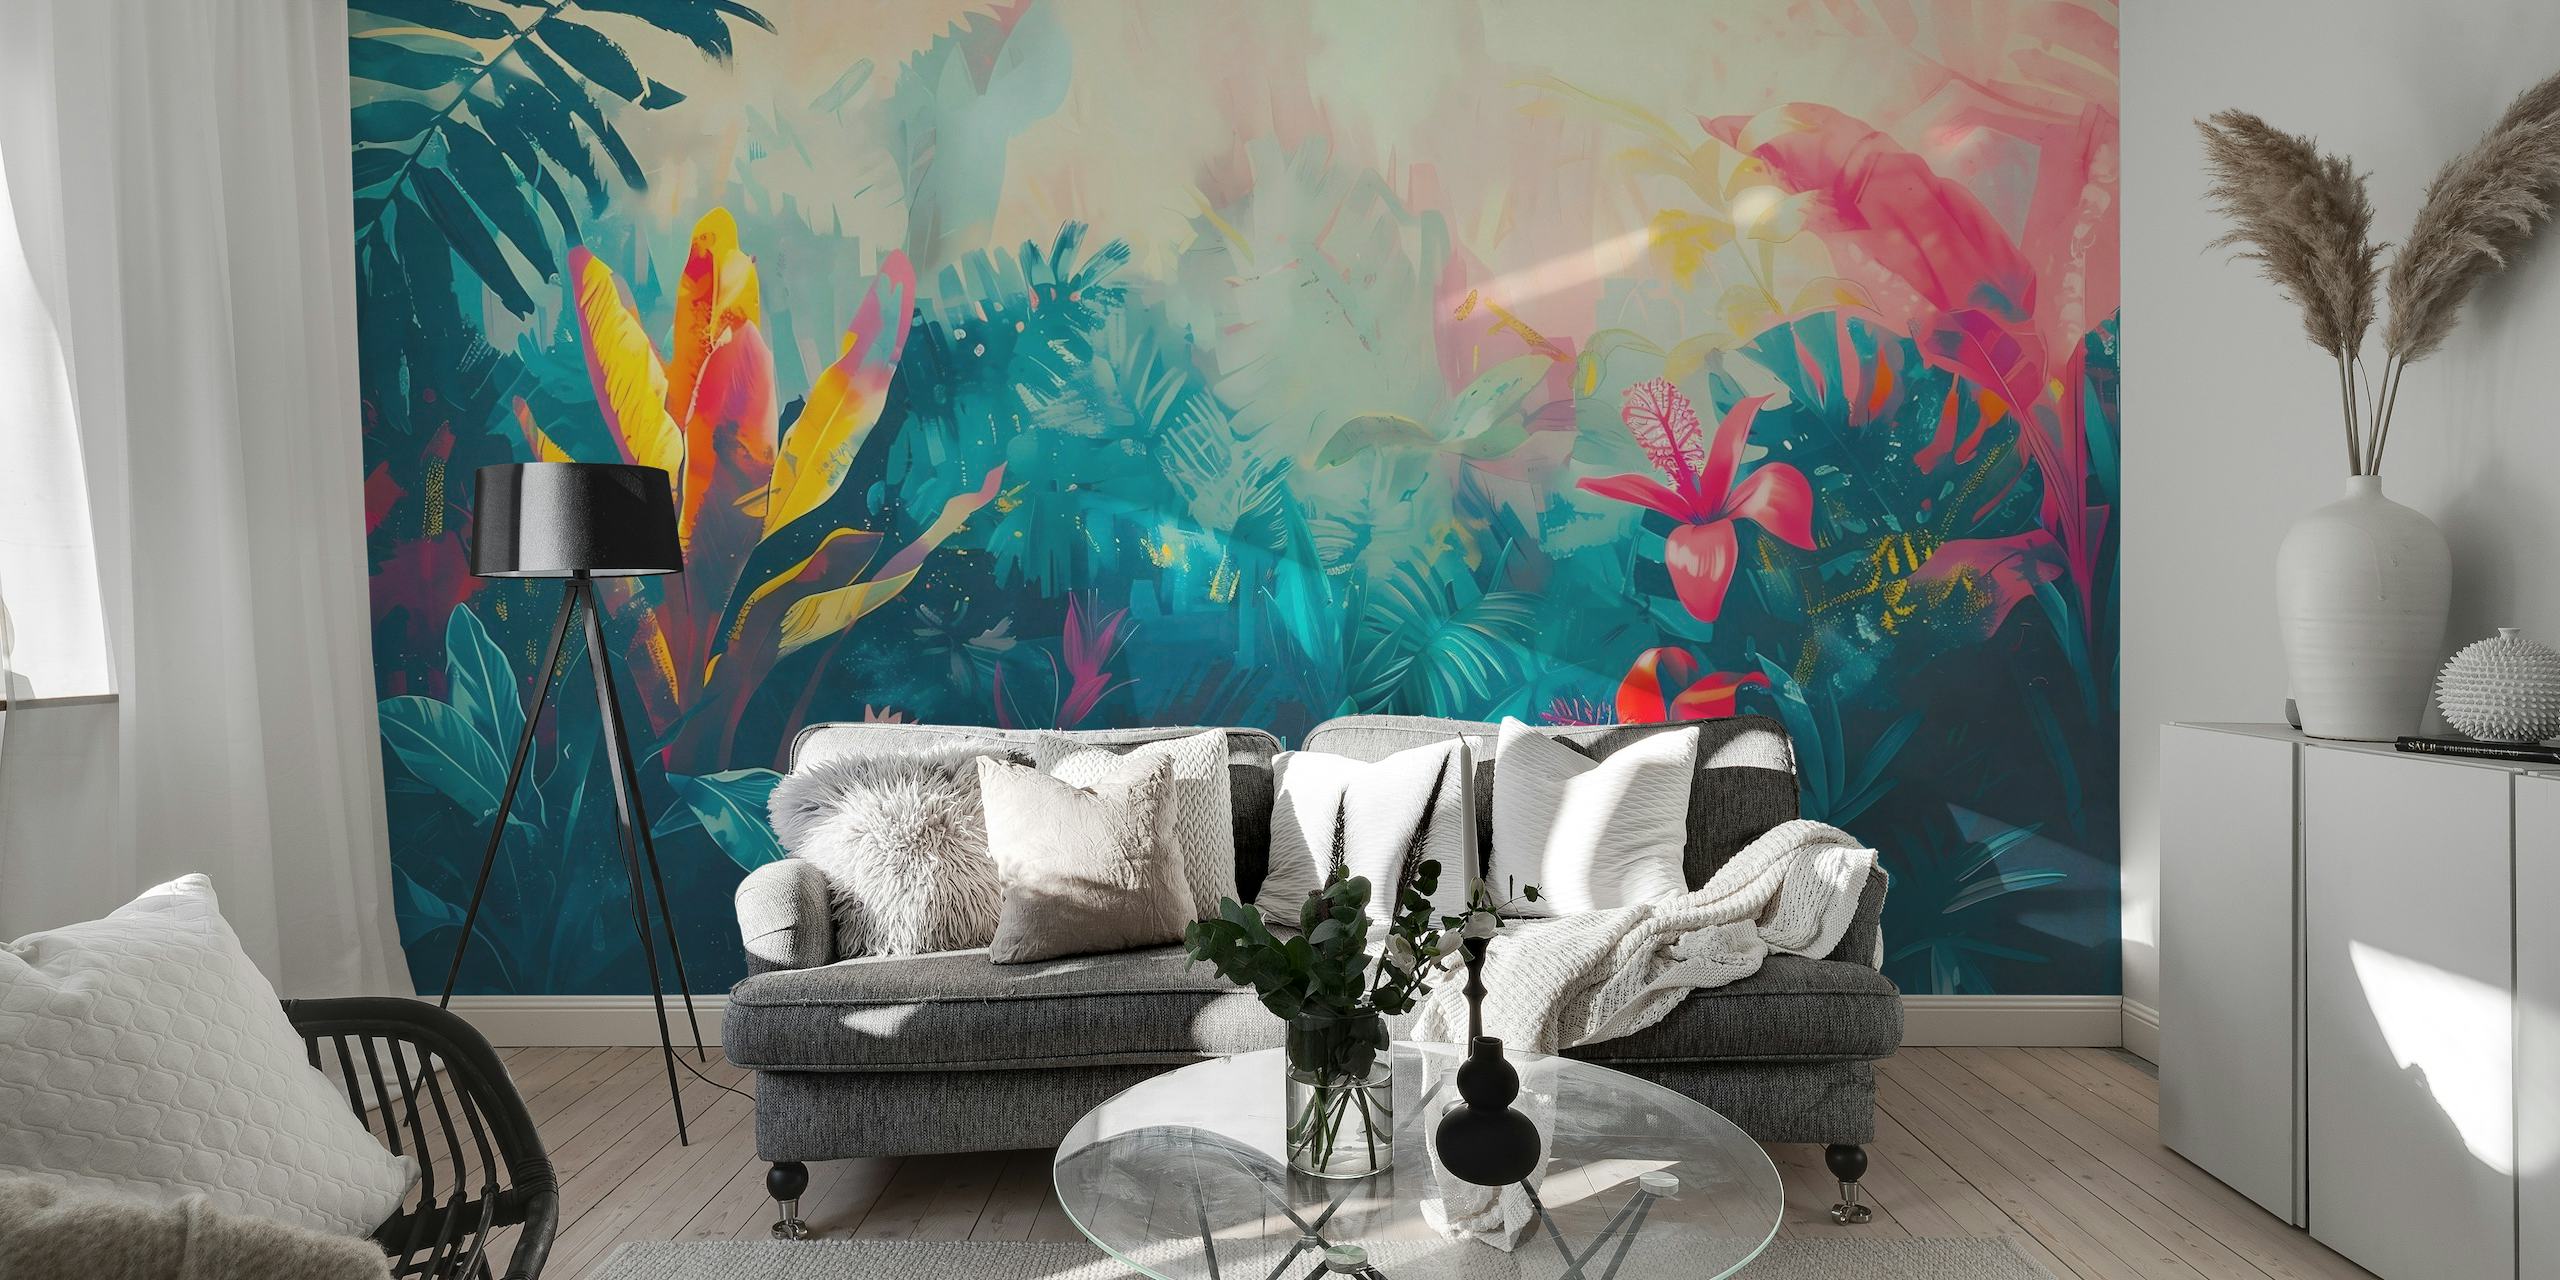 Mural de pared de jardín tropical colorido y vívido con follaje exuberante y flores en flor